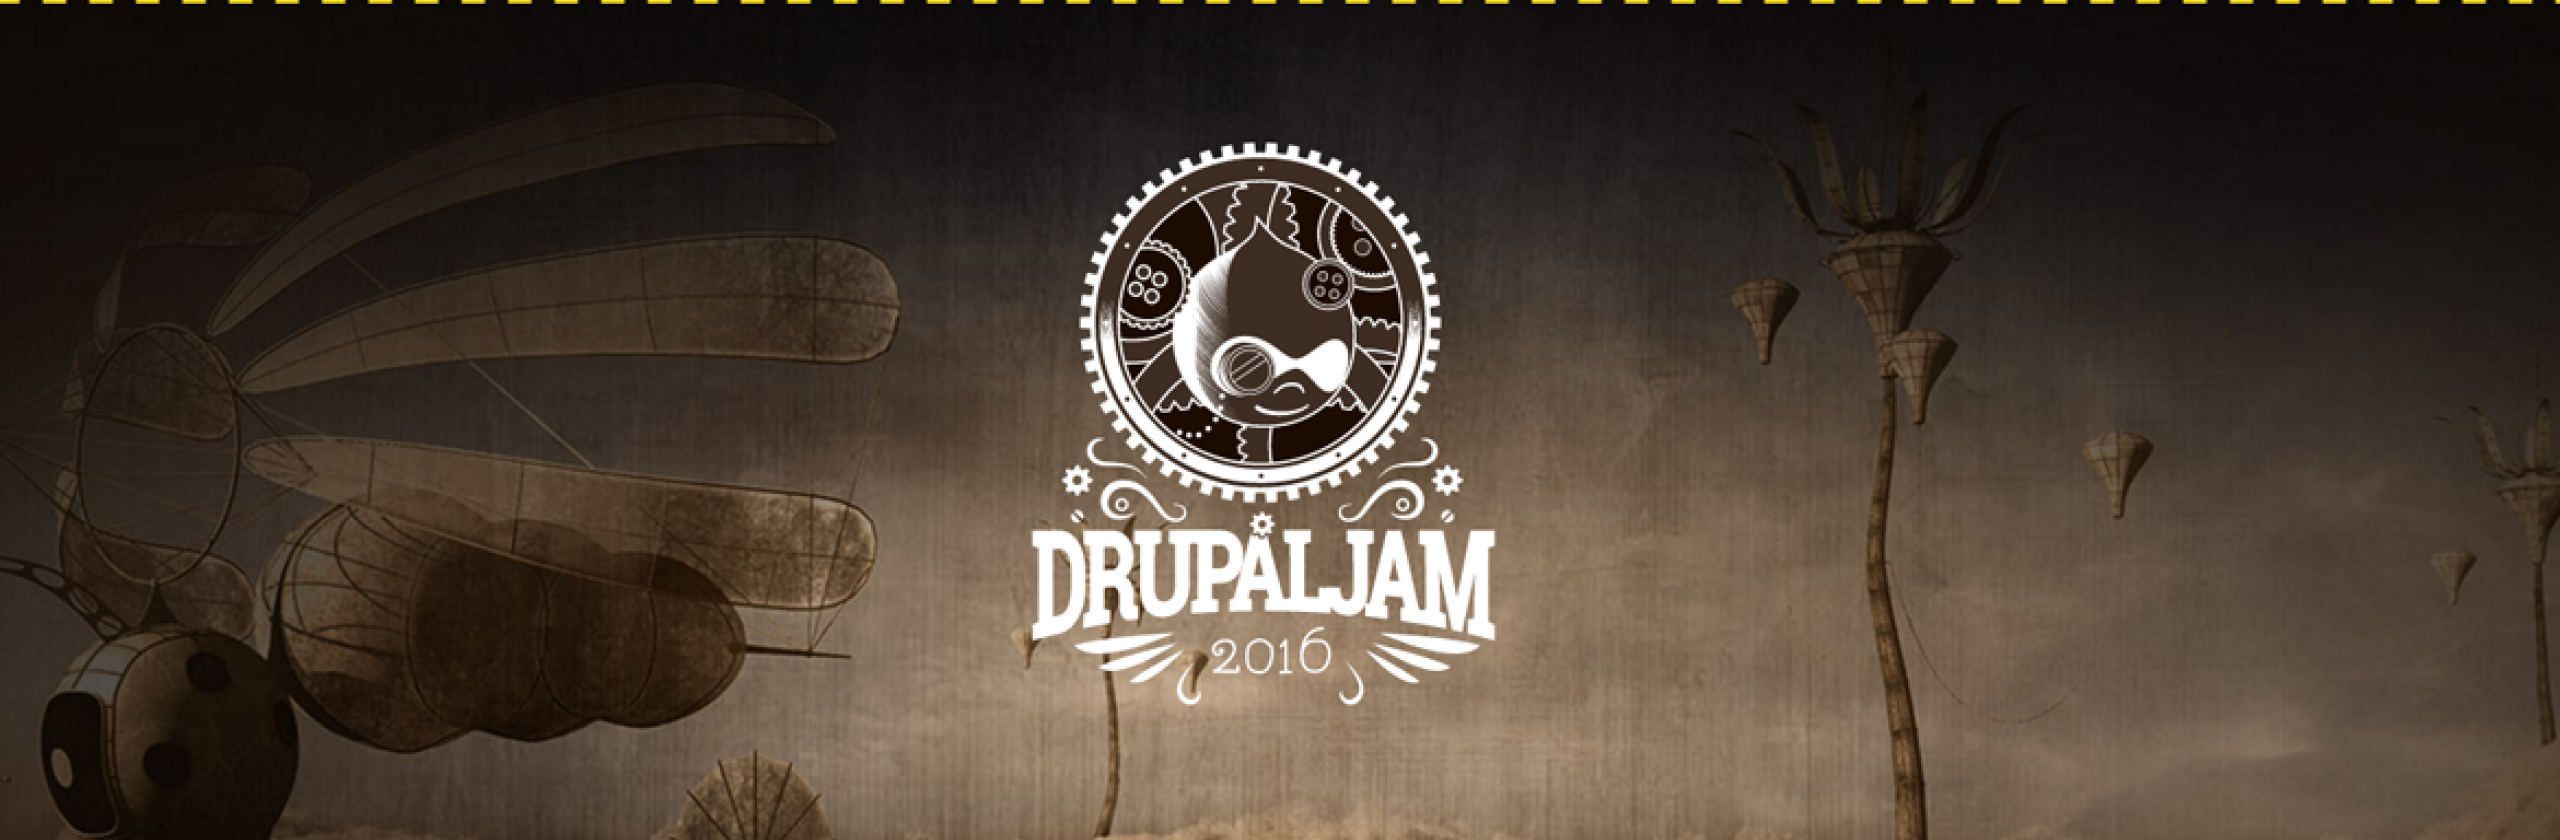 Drupaljam 2016 logo